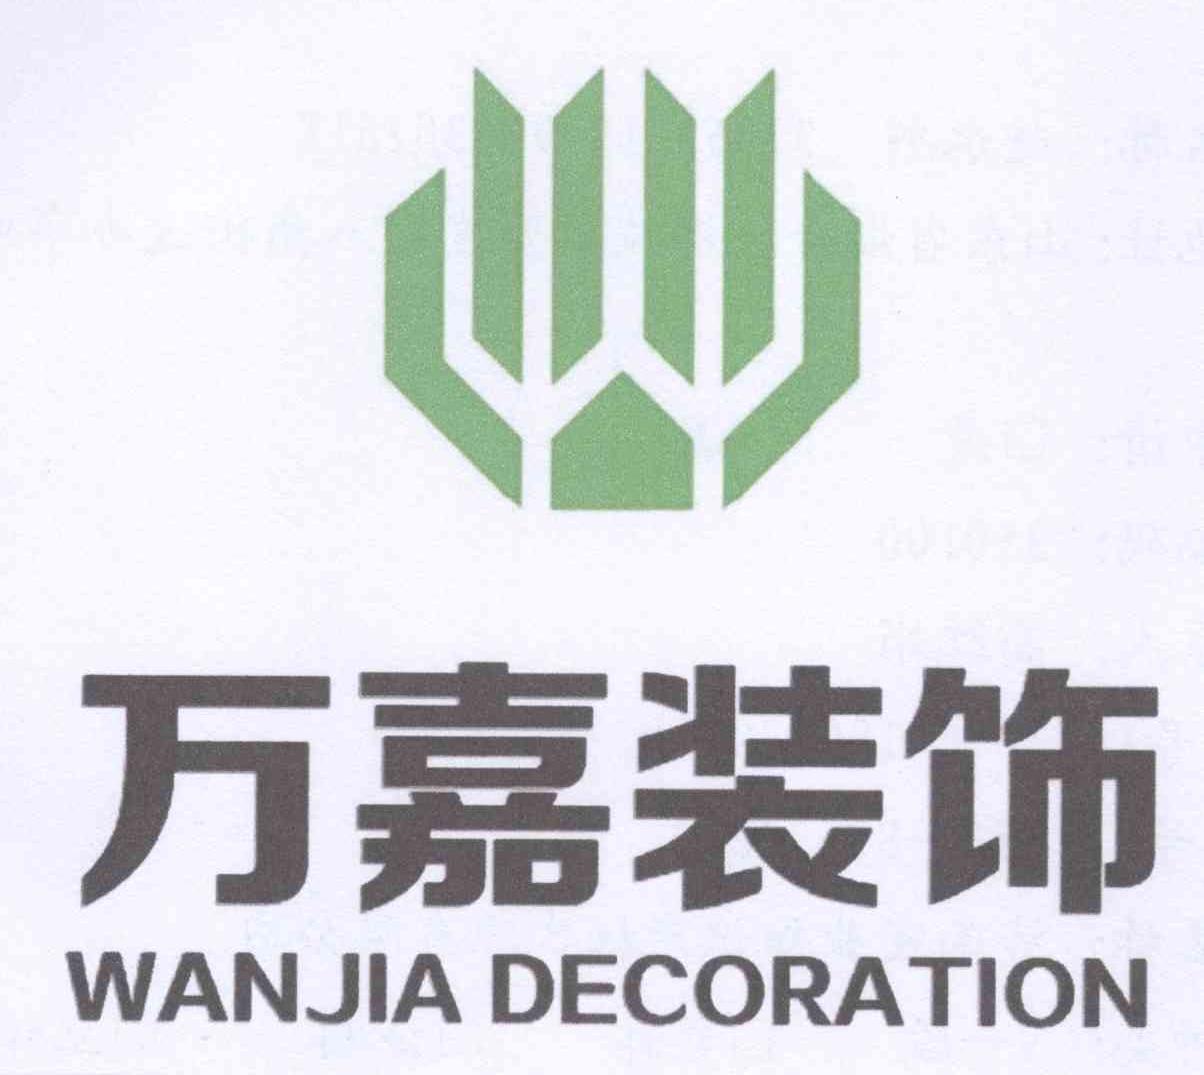 万嘉装饰 wan jia decoration 商标公告